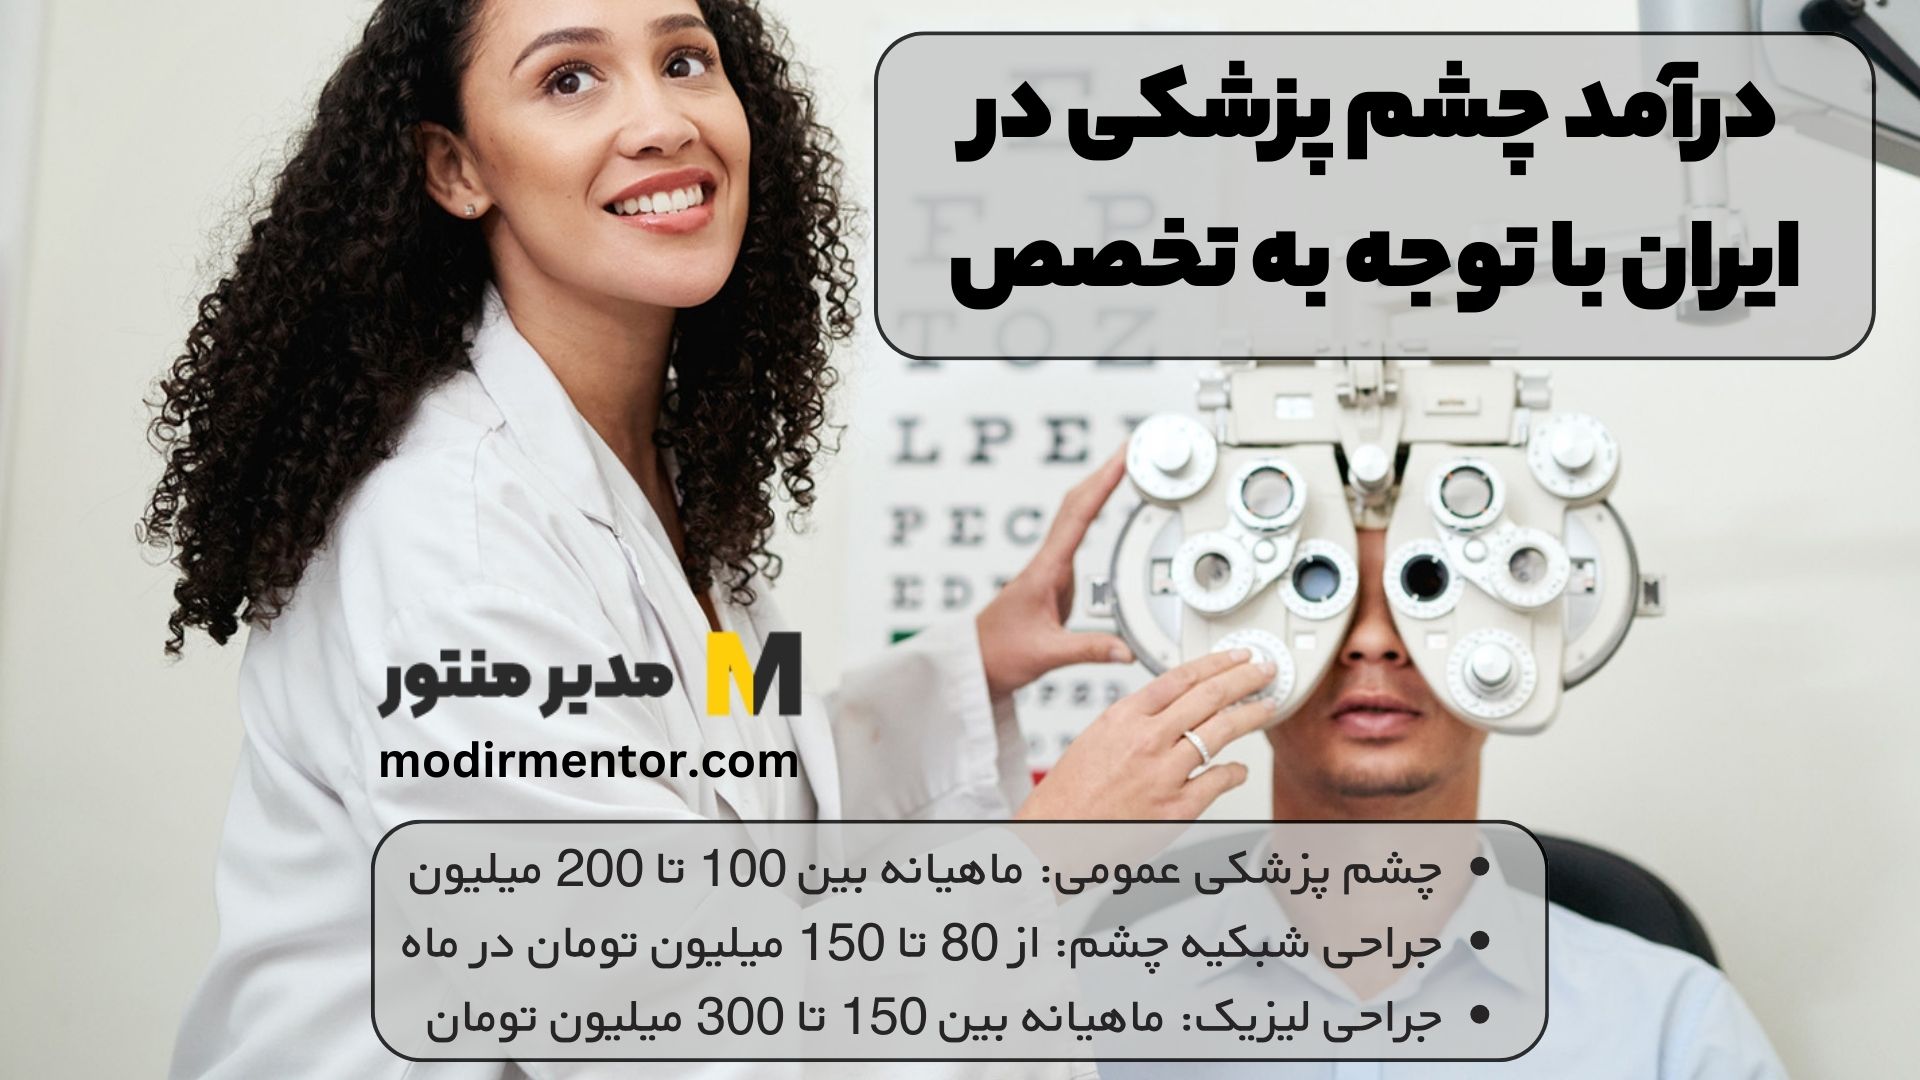 درآمد چشم پزشکی در ایران با توجه به تخصص